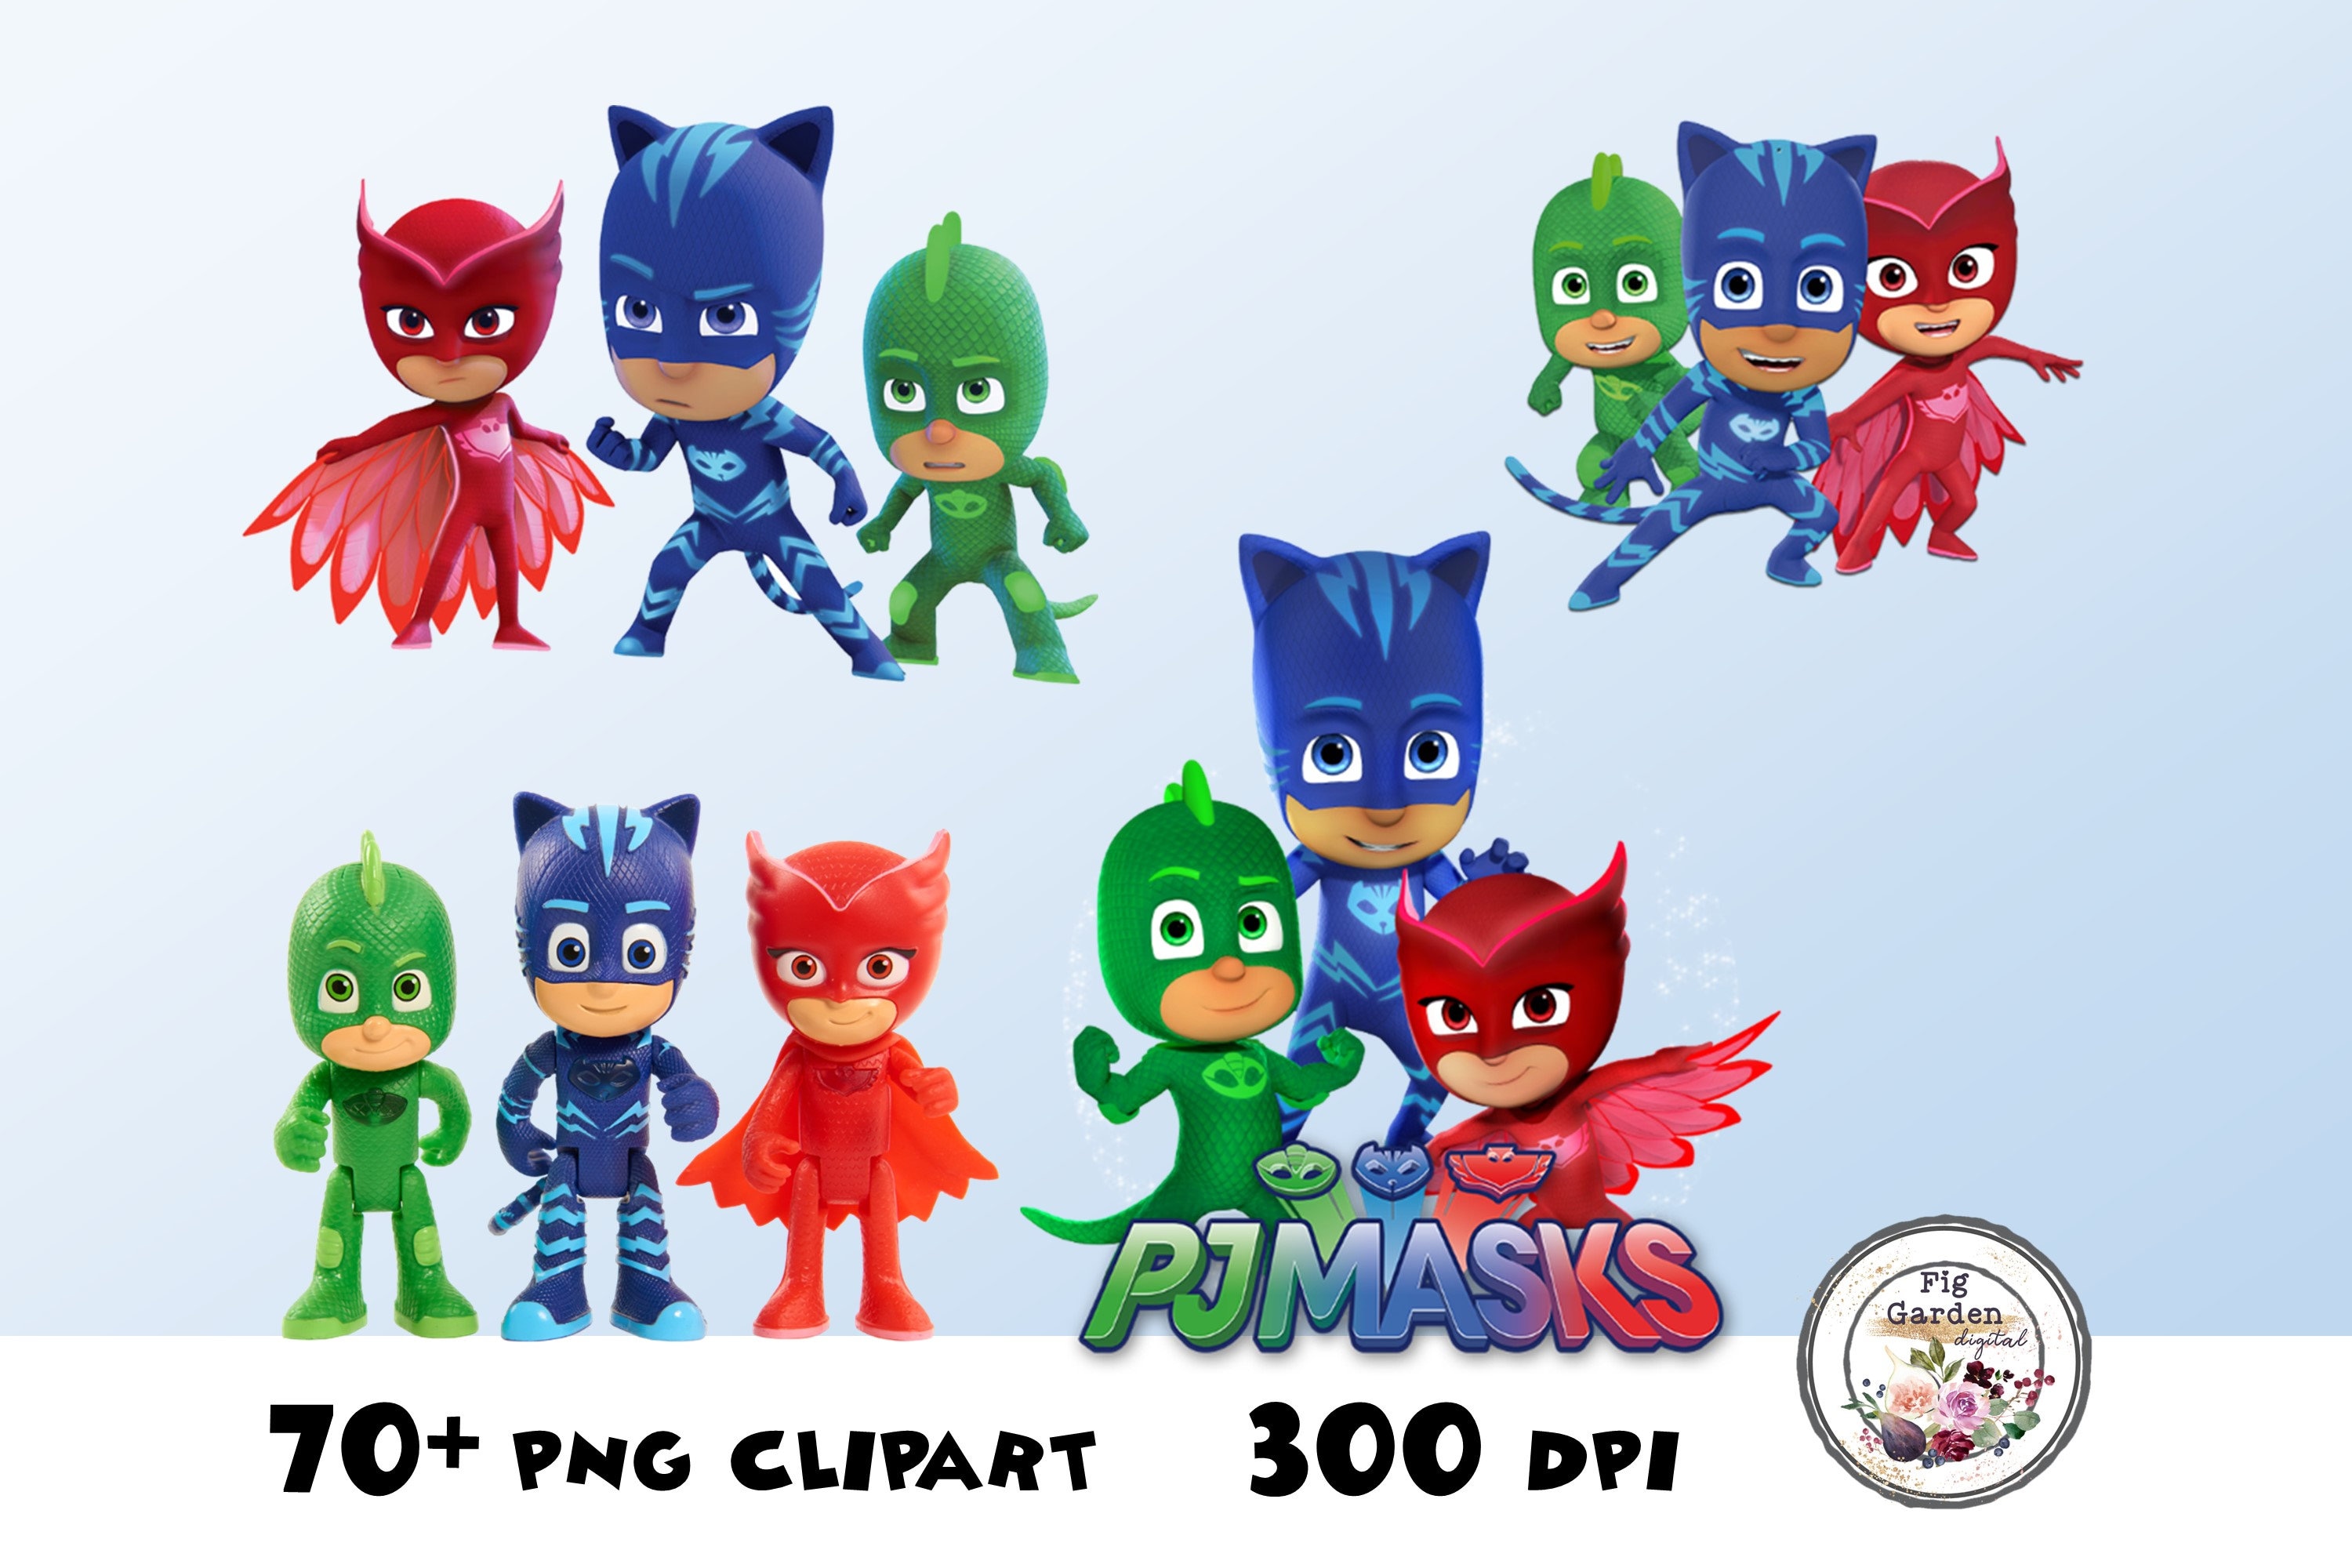 PJ MASKS Clipart PNG Images 300dpi Digital Clip Art Instant | Etsy